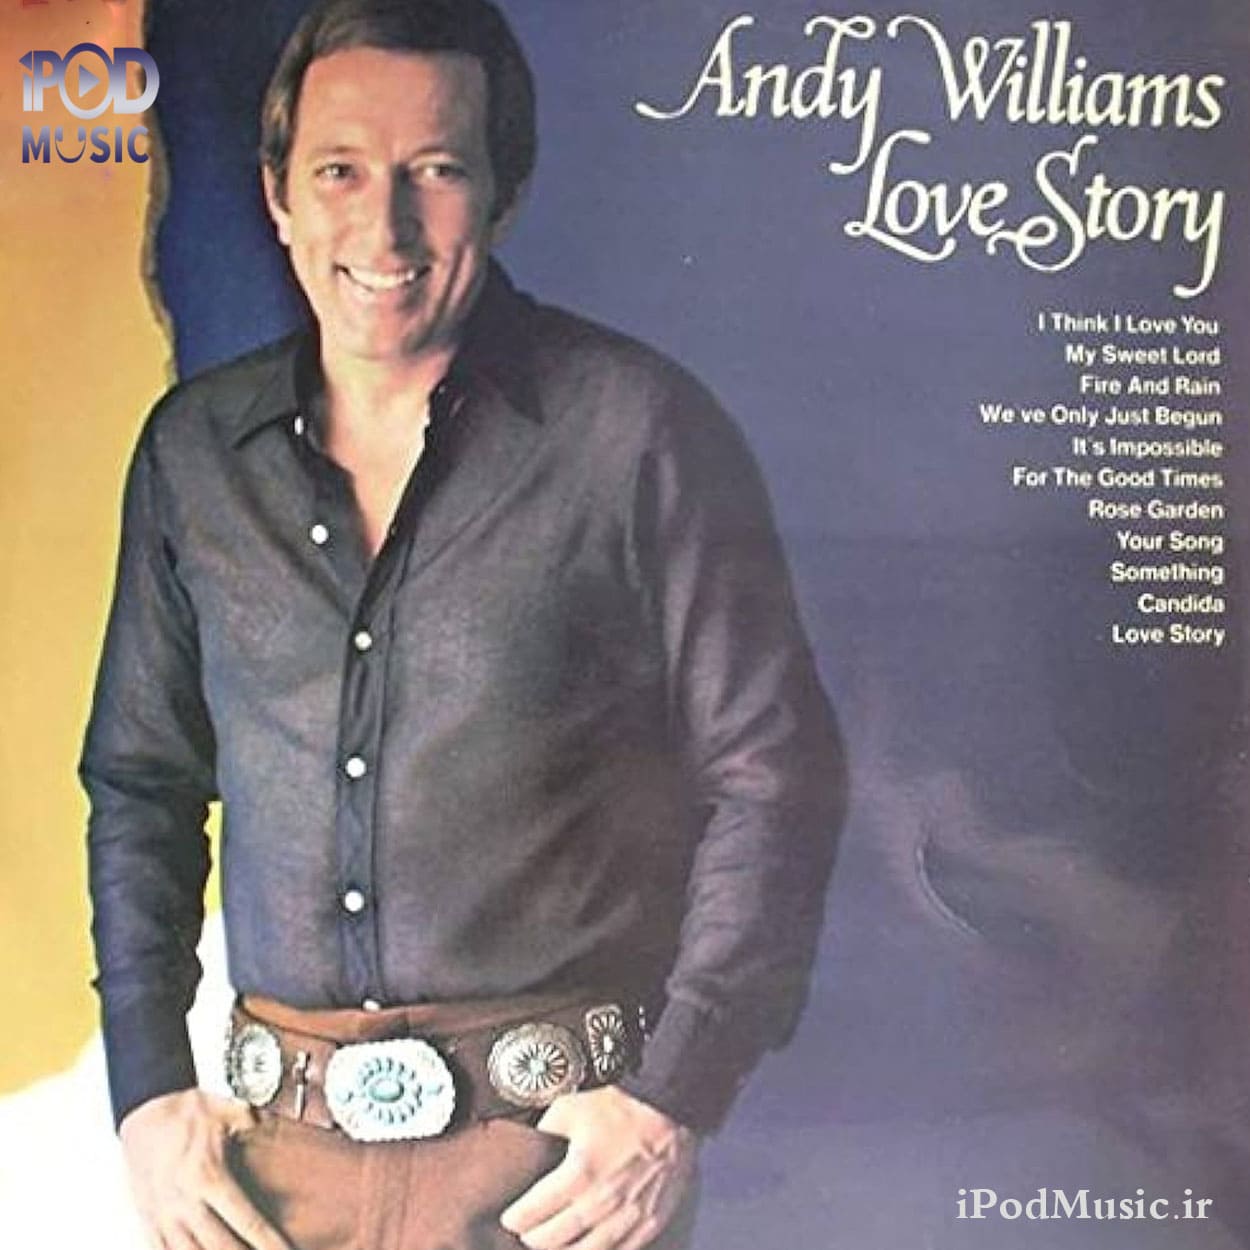 دانلود آهنگ لاو استوری( داستان عشق Love Story) از Andy Williams